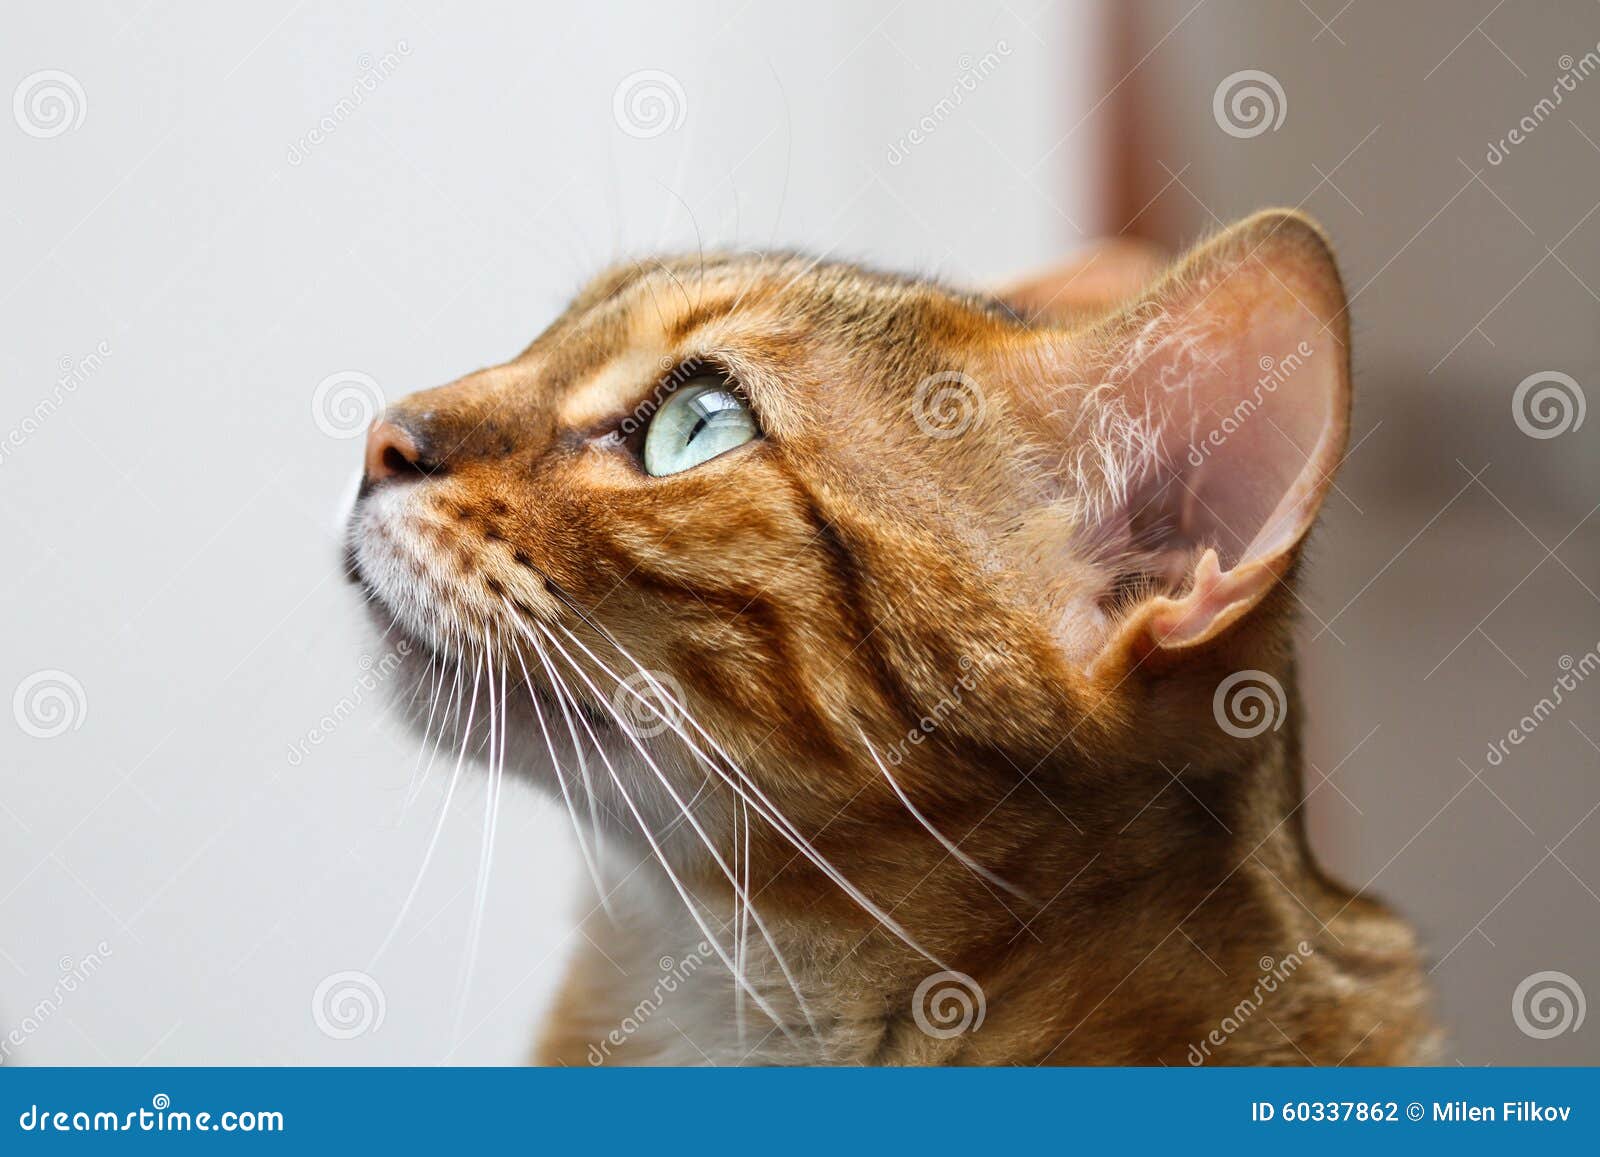 Bengal Cat Felis Catus Prionailurus Bengalensis Head In Profile Stock Photo Image Of Bengal Prionailurus